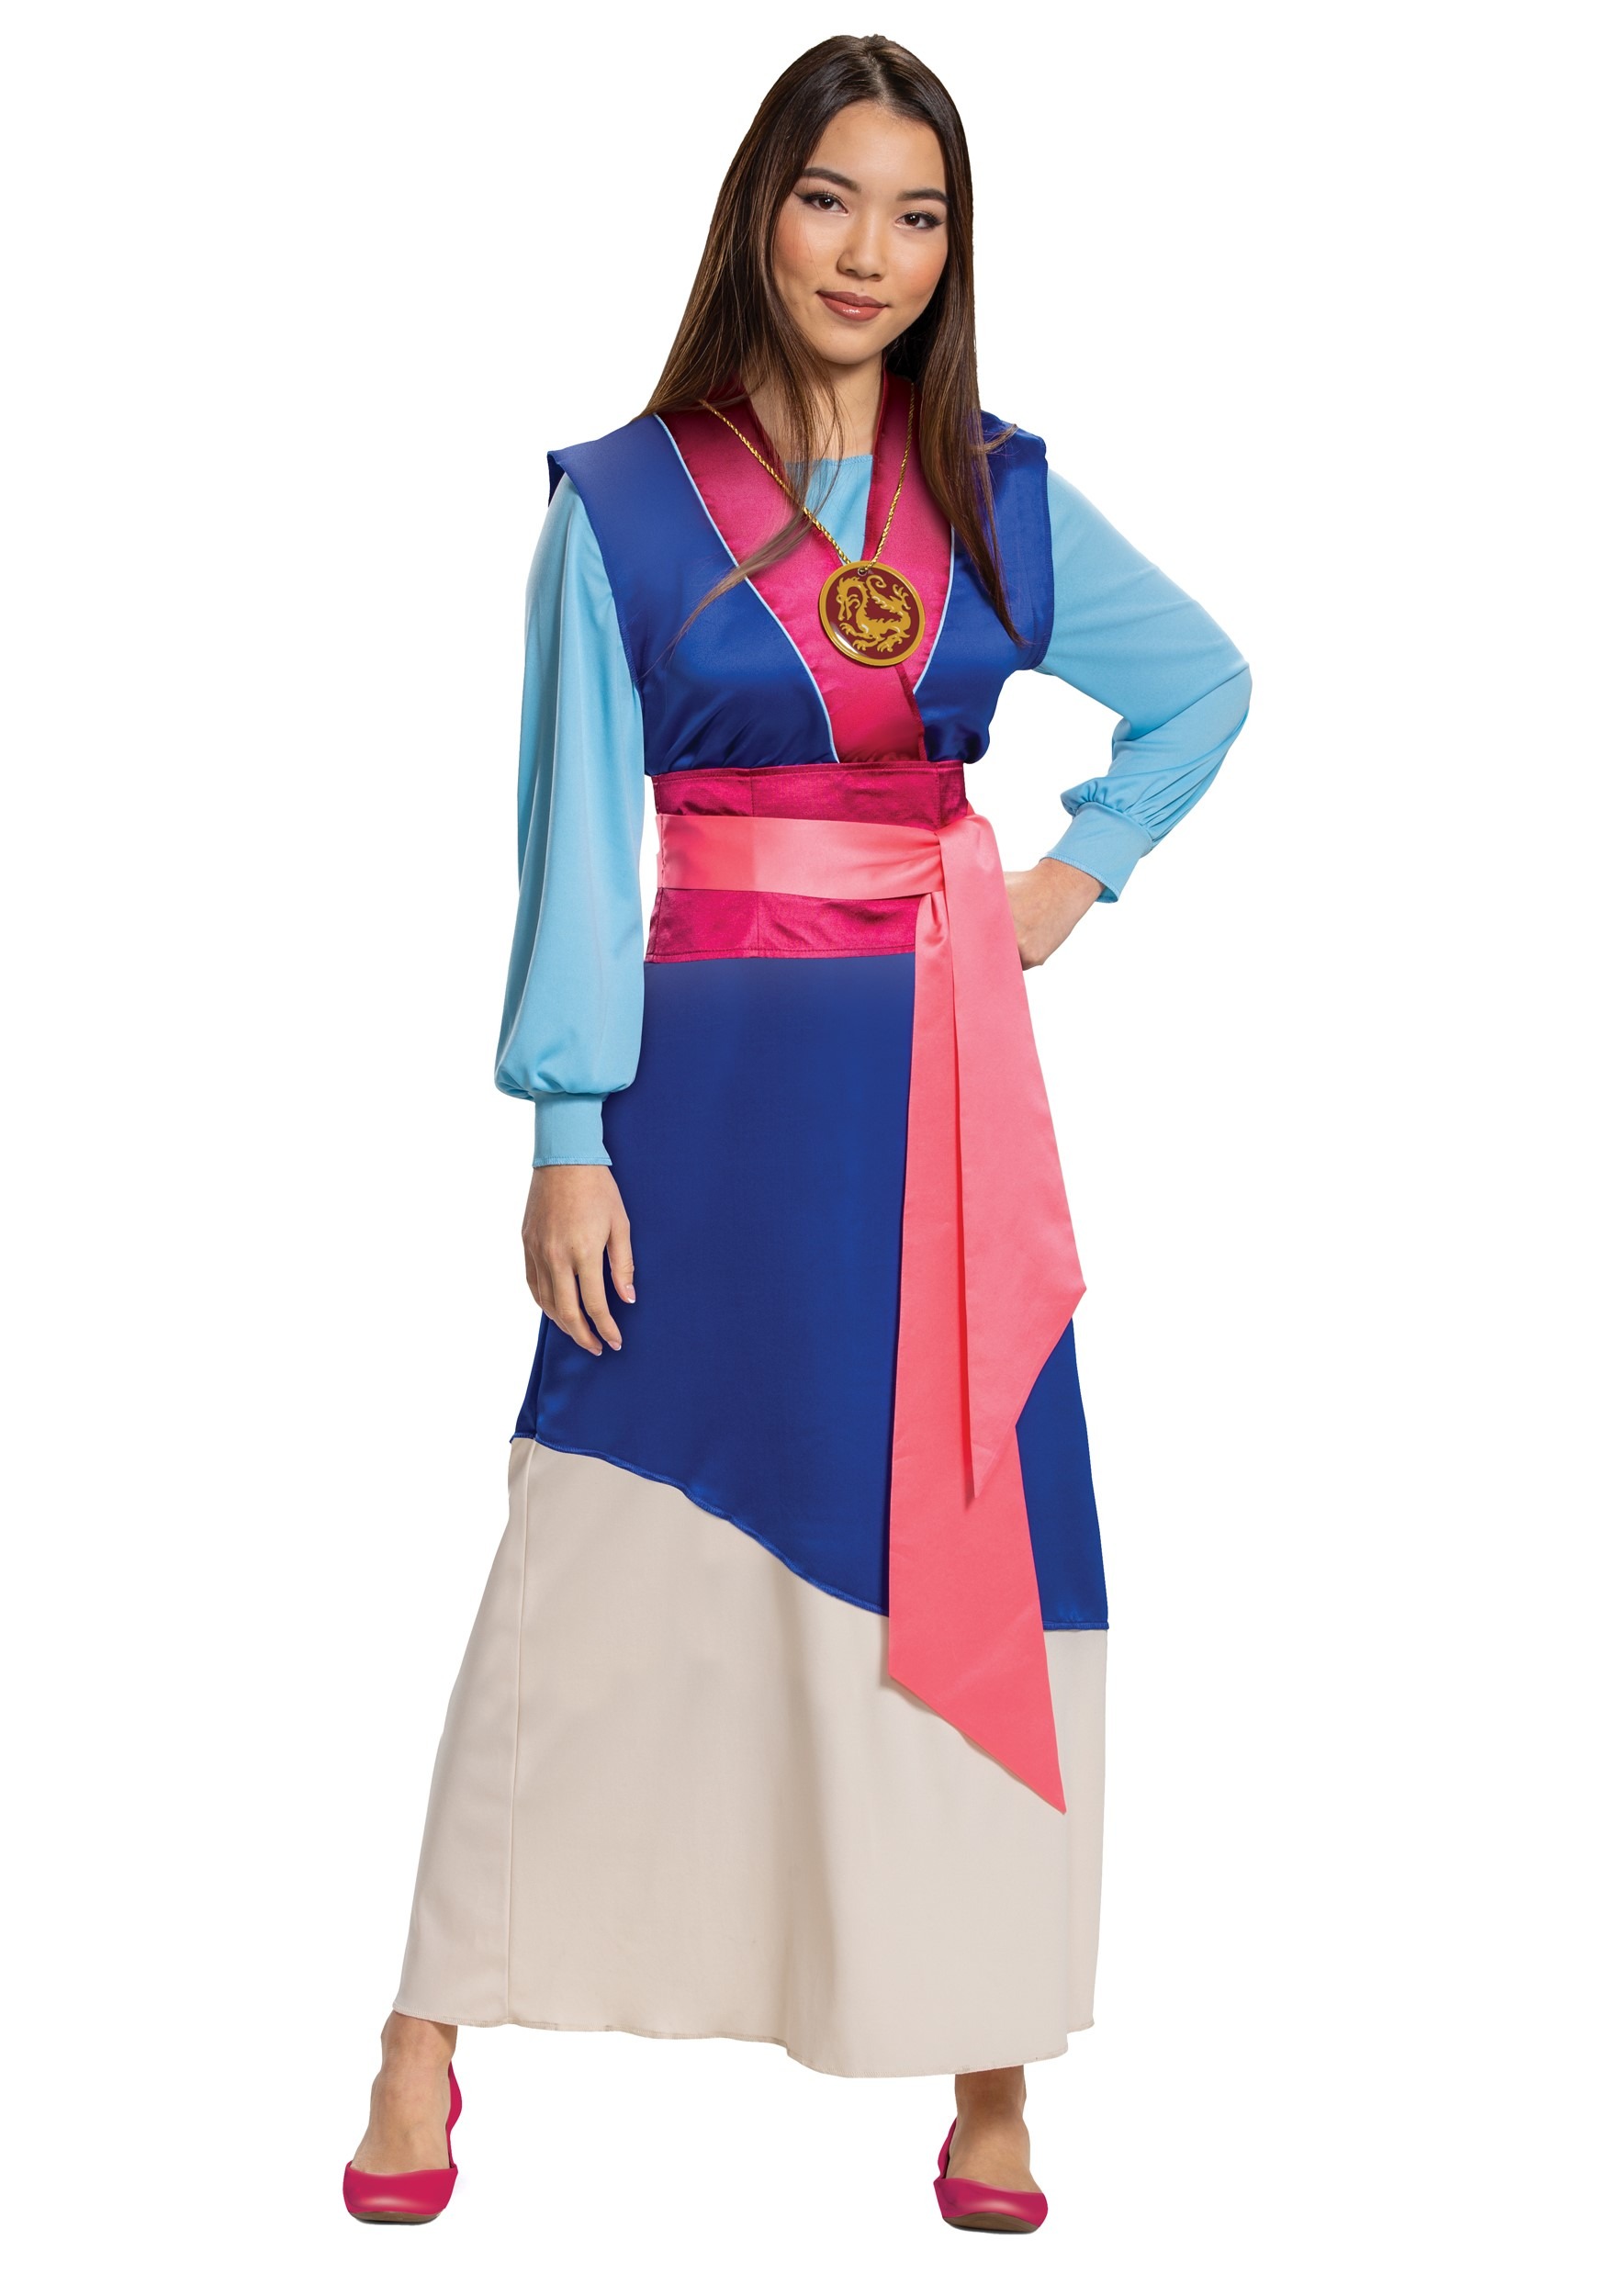 Photos - Fancy Dress Winsun Dress Disguise Limited Mulan Blue Dress Costume for Women Blue/Brown/Pin 